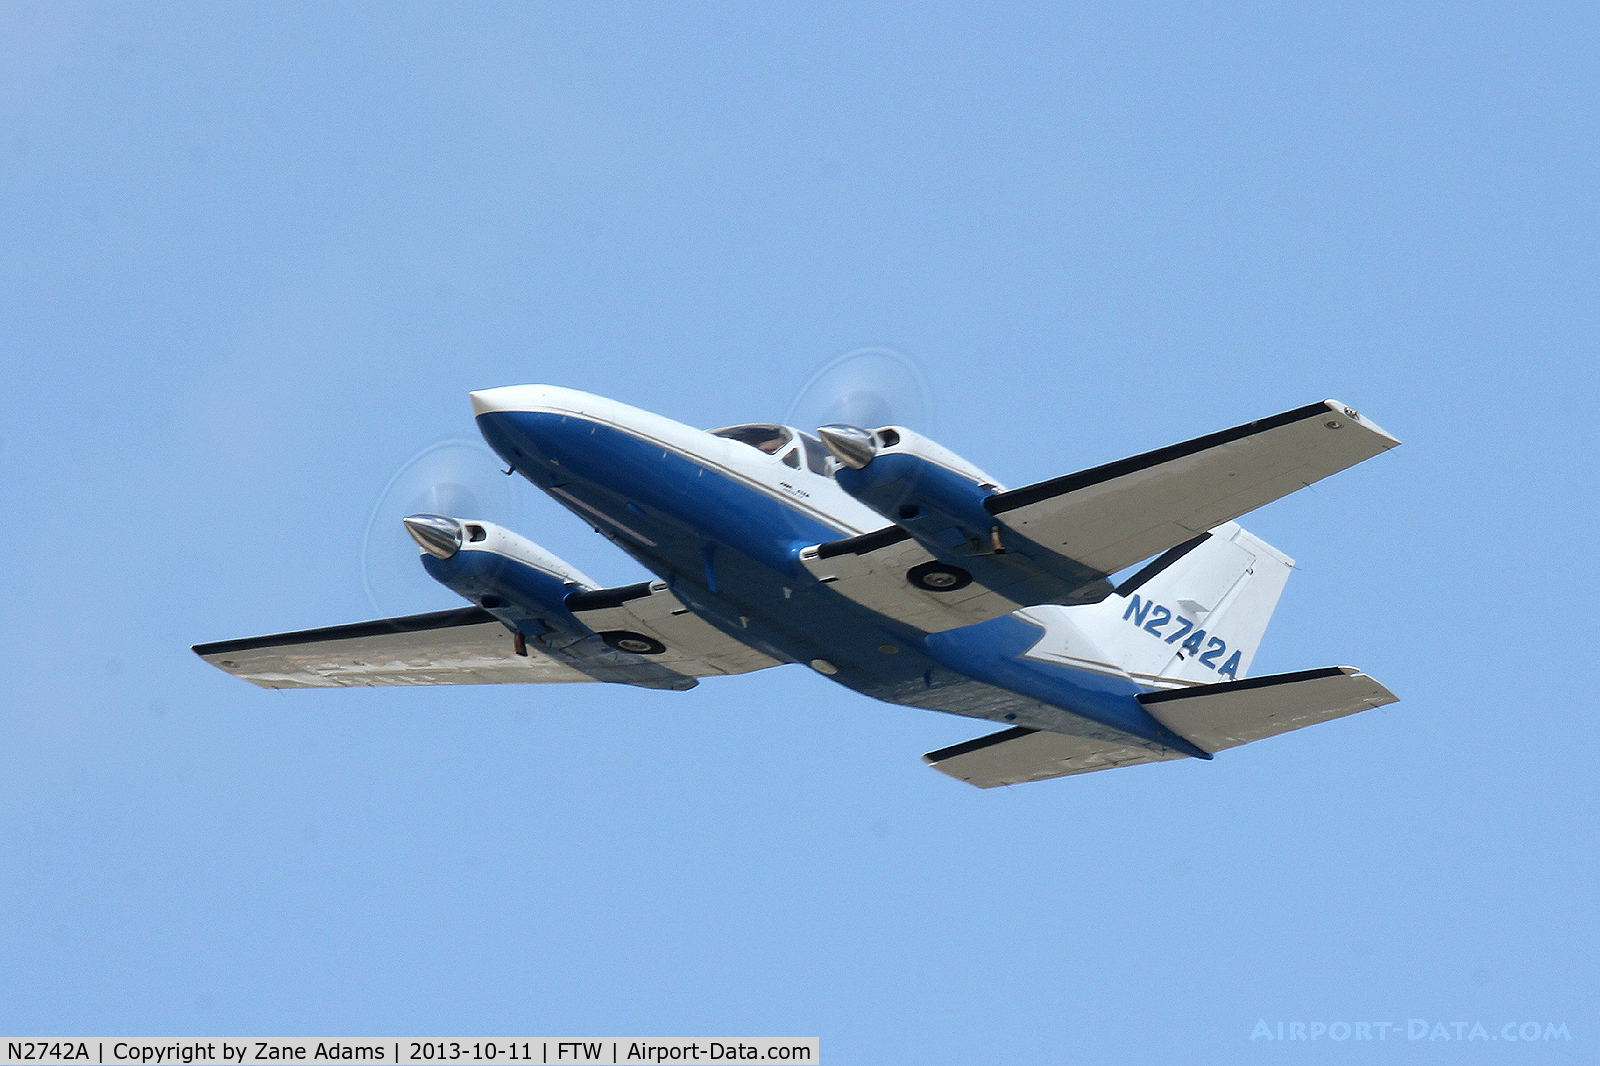 N2742A, 1980 Cessna 414A Chancellor C/N 414A0620, At Meacham Field - Fort Worth, TX